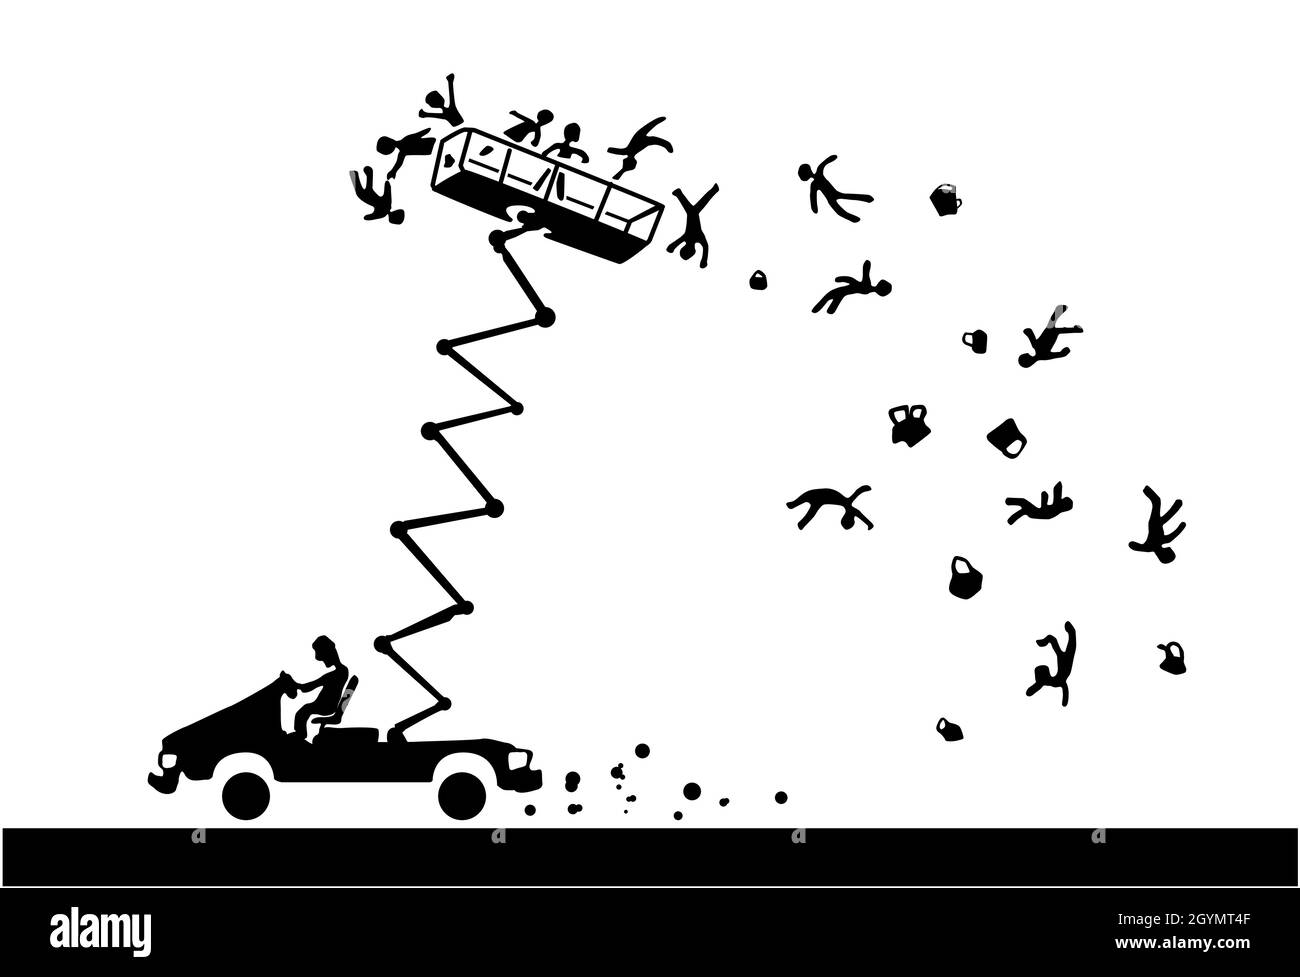 Car high platform passengers falling scene silhouette cartoon black, vector illustration, horizontal, over white Stock Vector